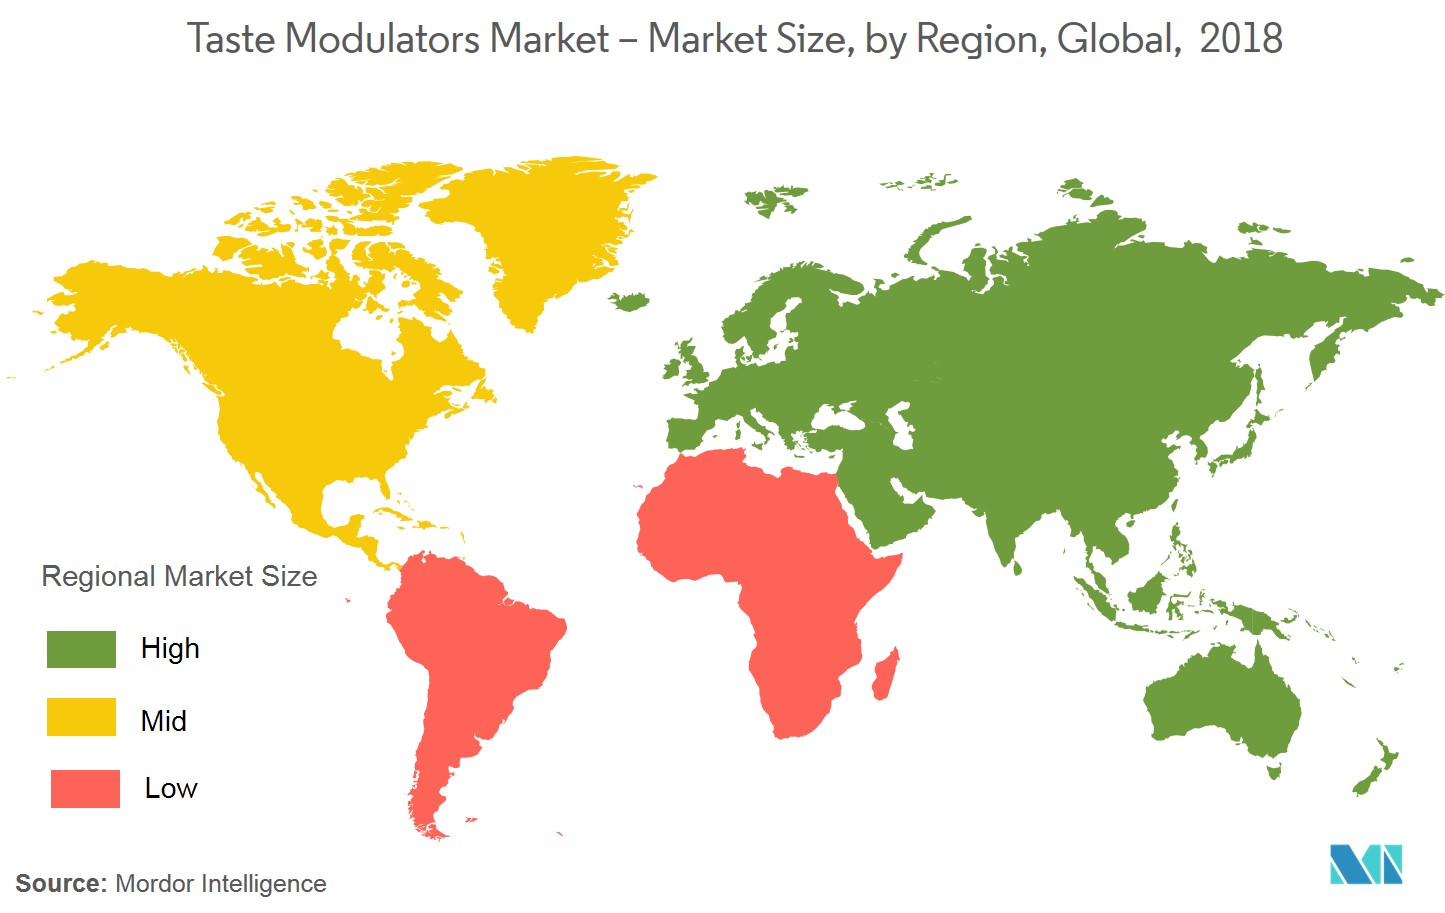 Taste Modulators Market - Market Size, by Region, Global, 2018